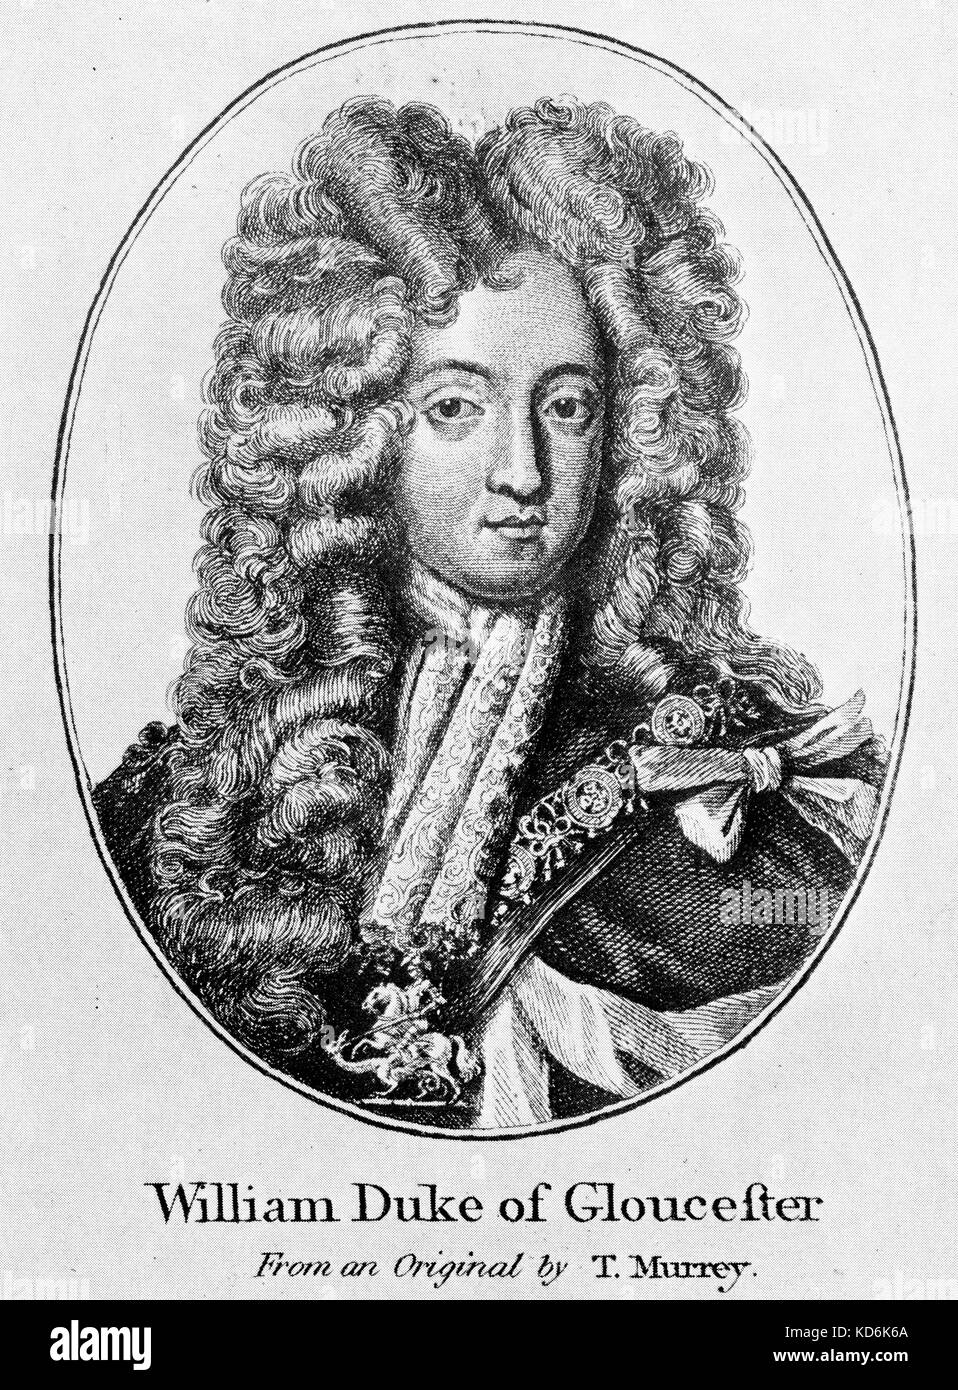 William Duc de Gloucester (1689-1700) à partir d'un original par T. Murrey. Signée par William. Connexion de Purcell. Banque D'Images